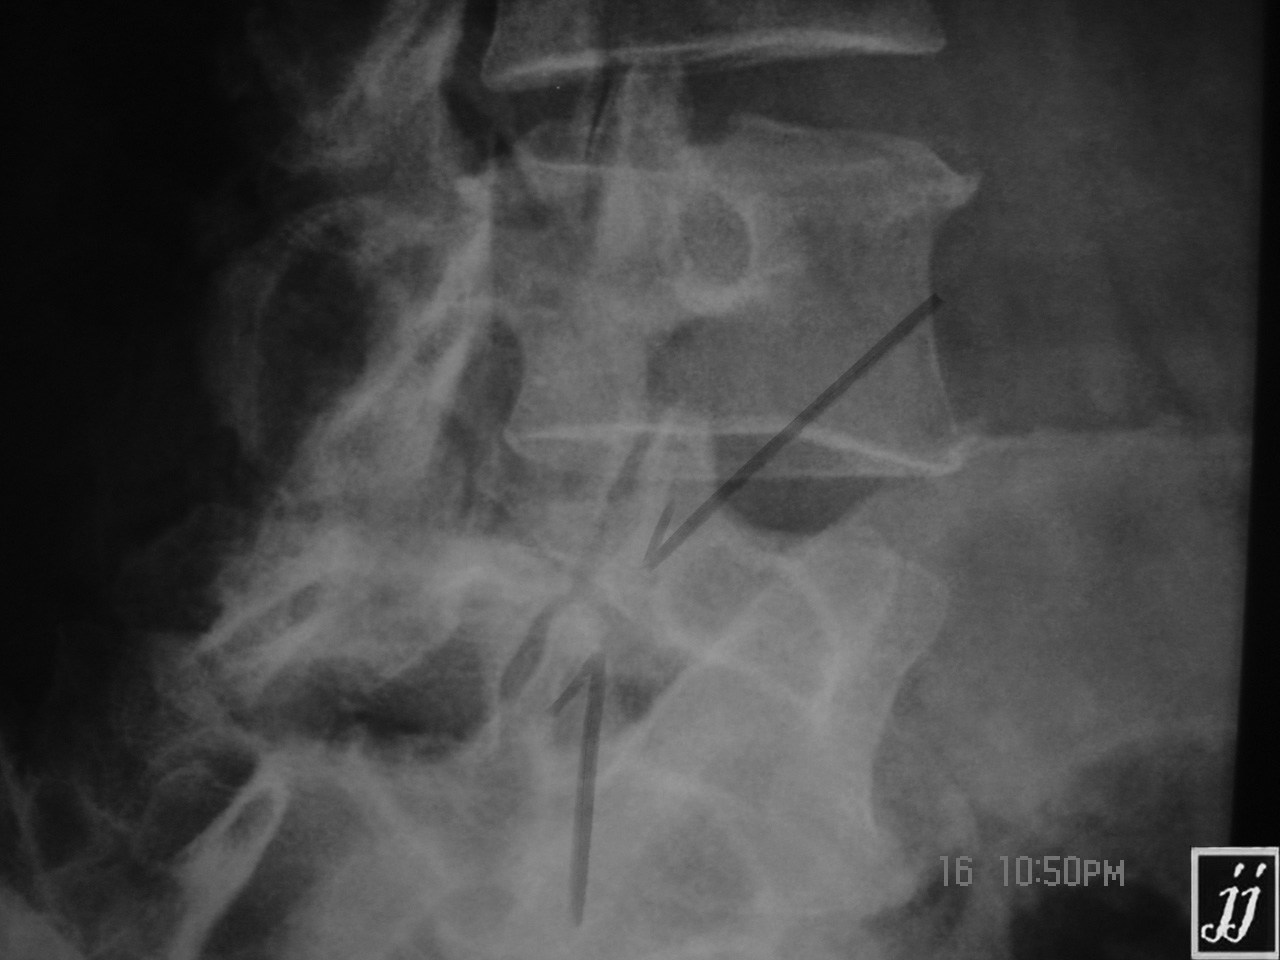 Spine Neck Fracture Of Scotty Dog At L5 Spondylolysis 3 